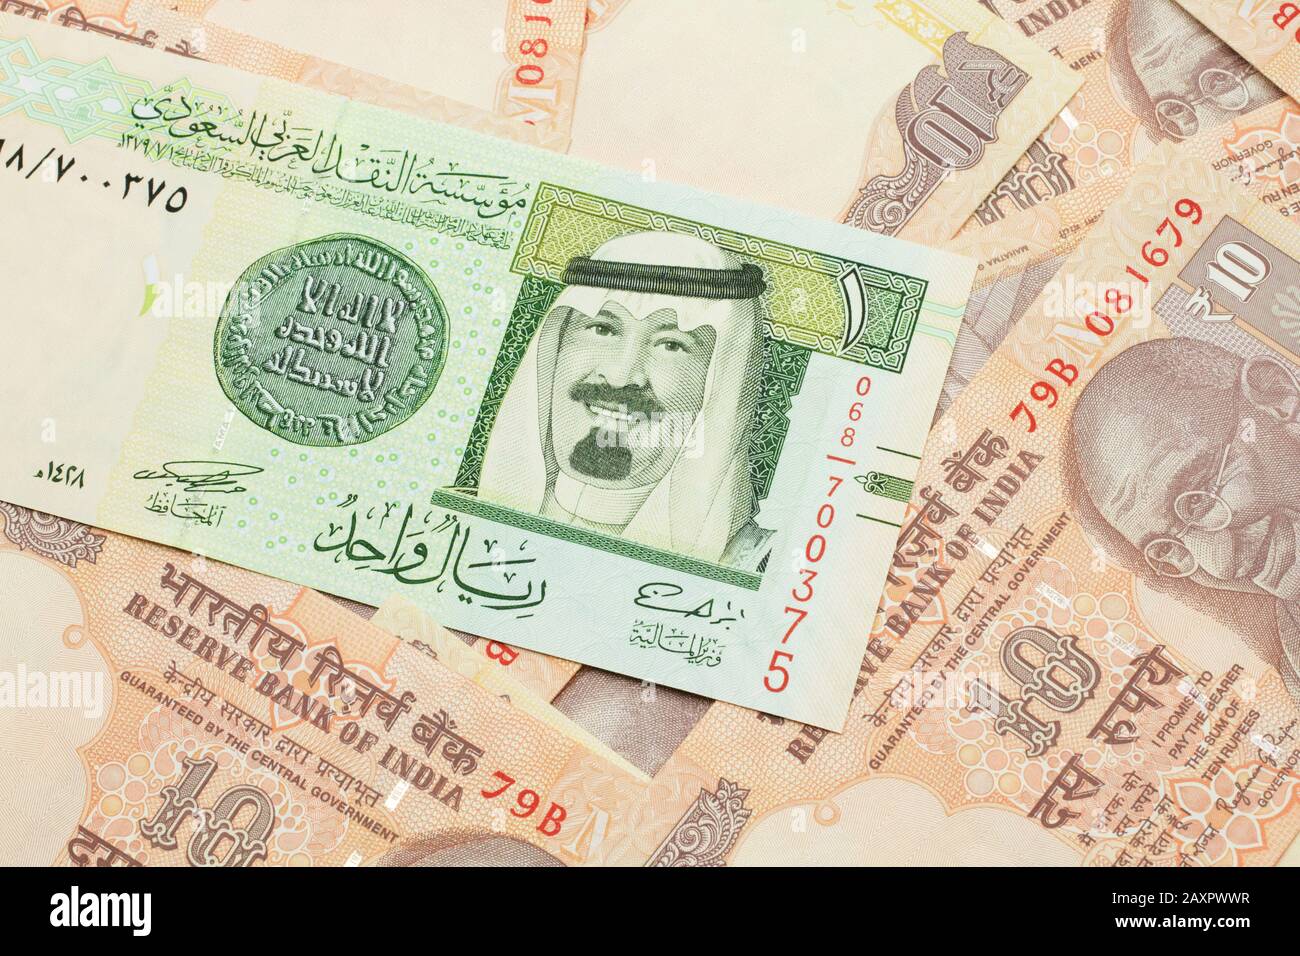 Saudi rupees